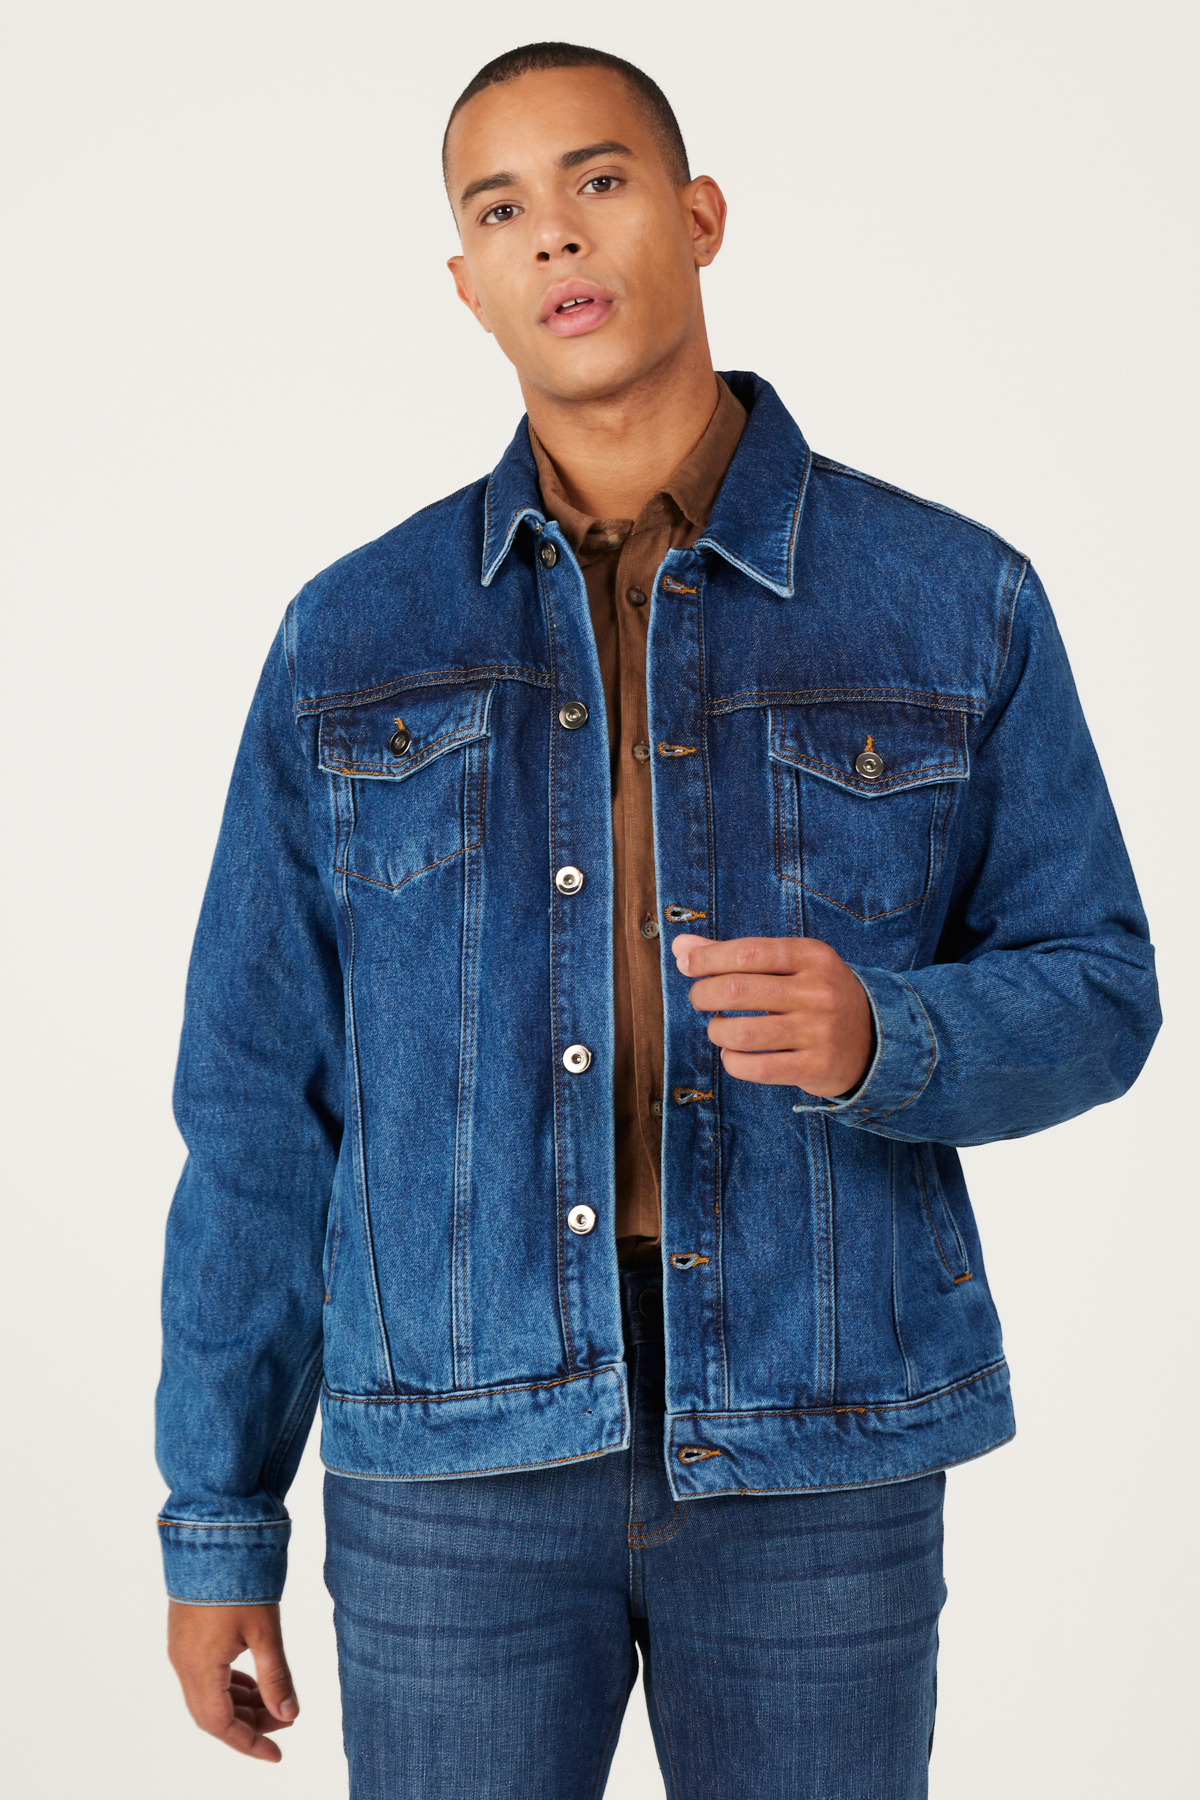 Levně AC&Co / Altınyıldız Classics Men's Navy Blue Standard Fit Regular Cut 100% Cotton Denim Jean Jacket